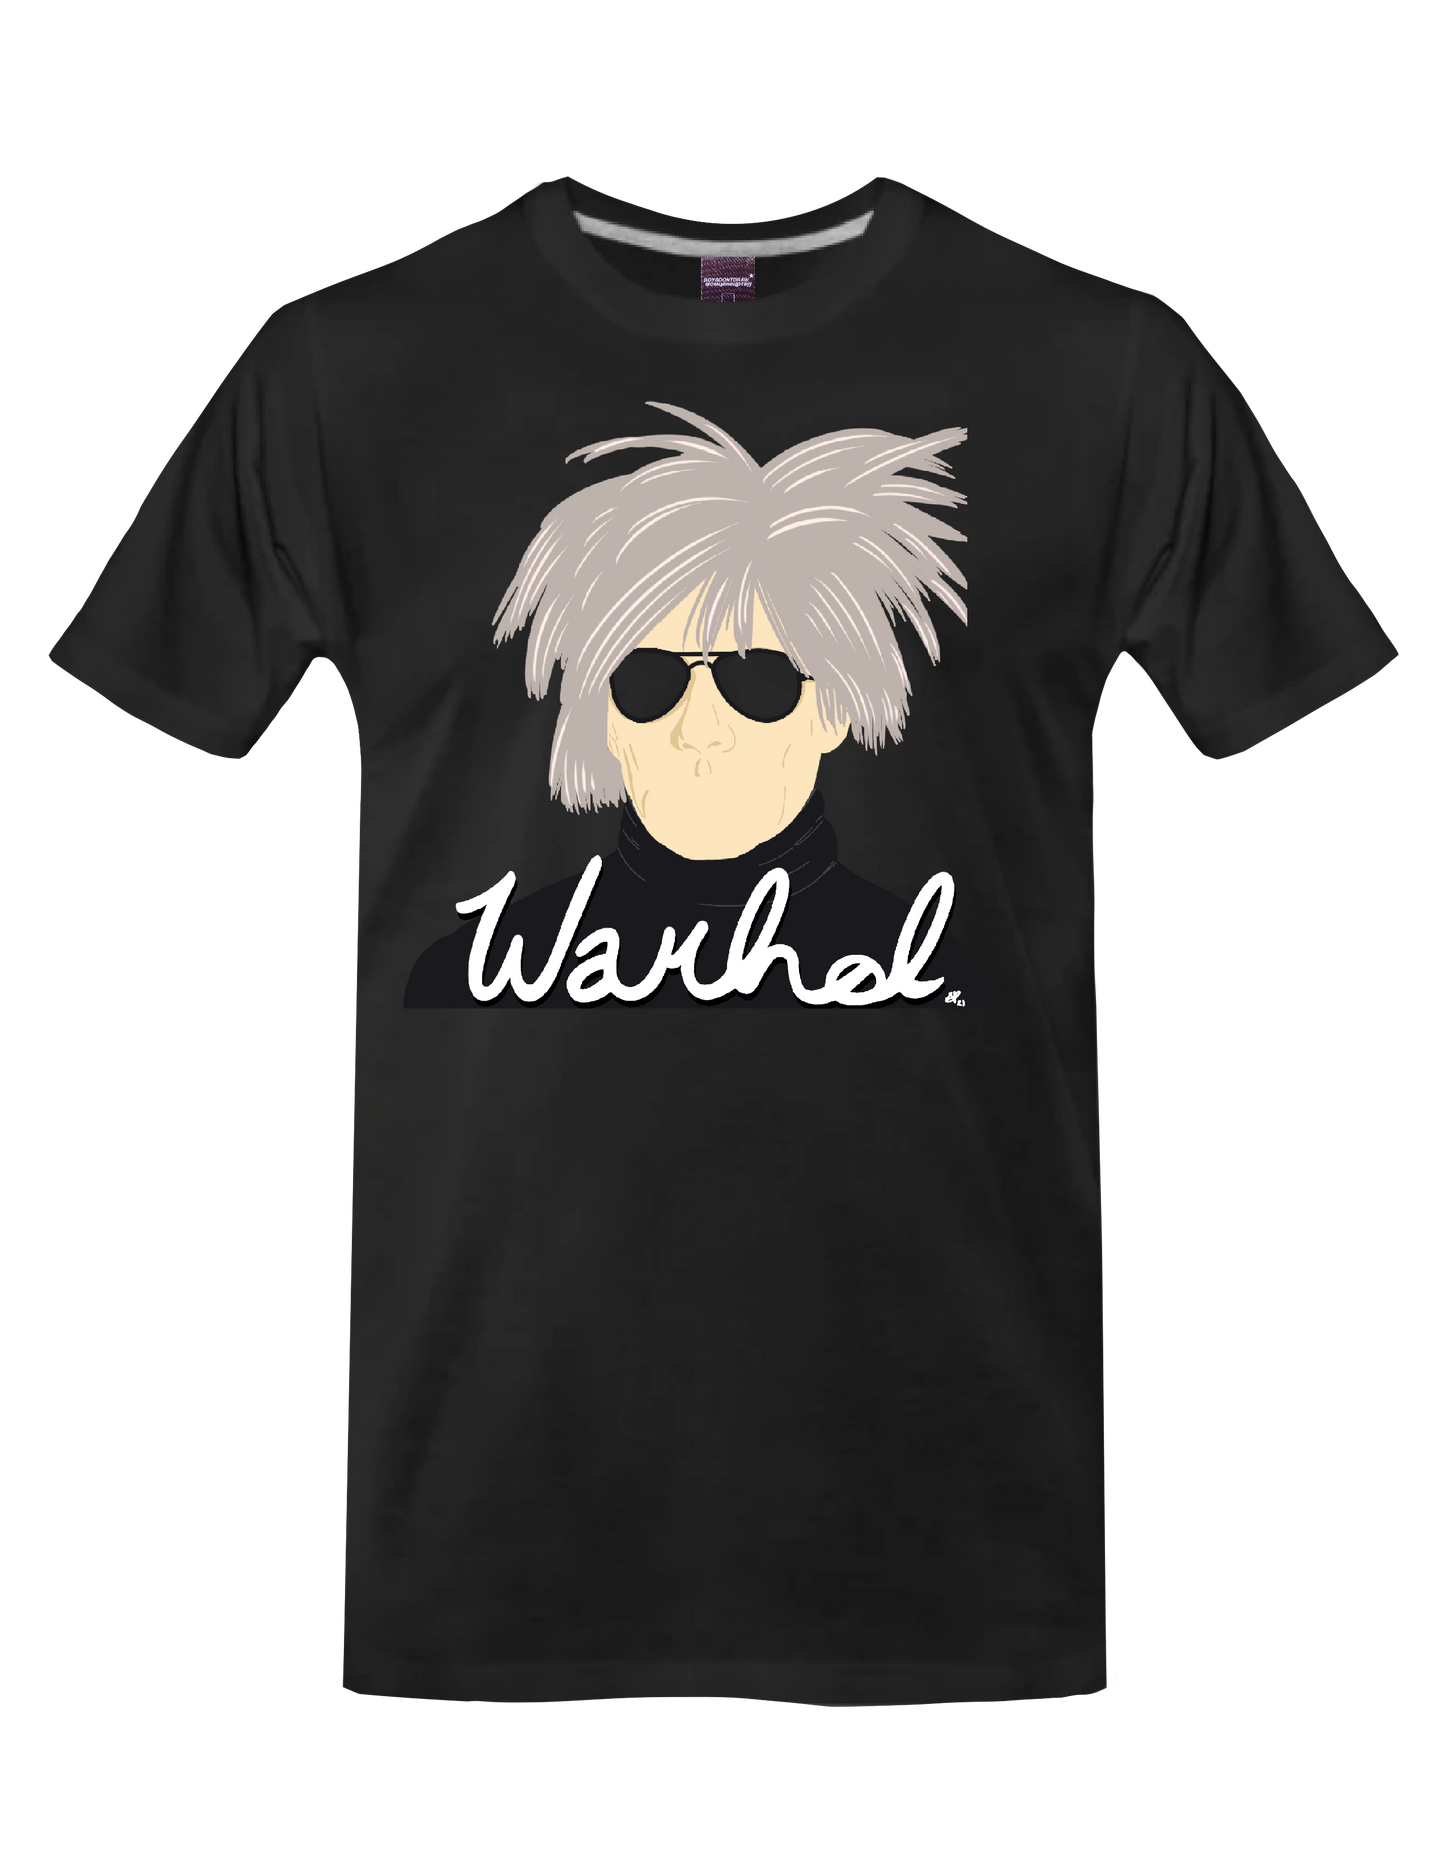 ANDY WARHOL - WARHOL* - T-Shirt by BOYSDONTDRAW